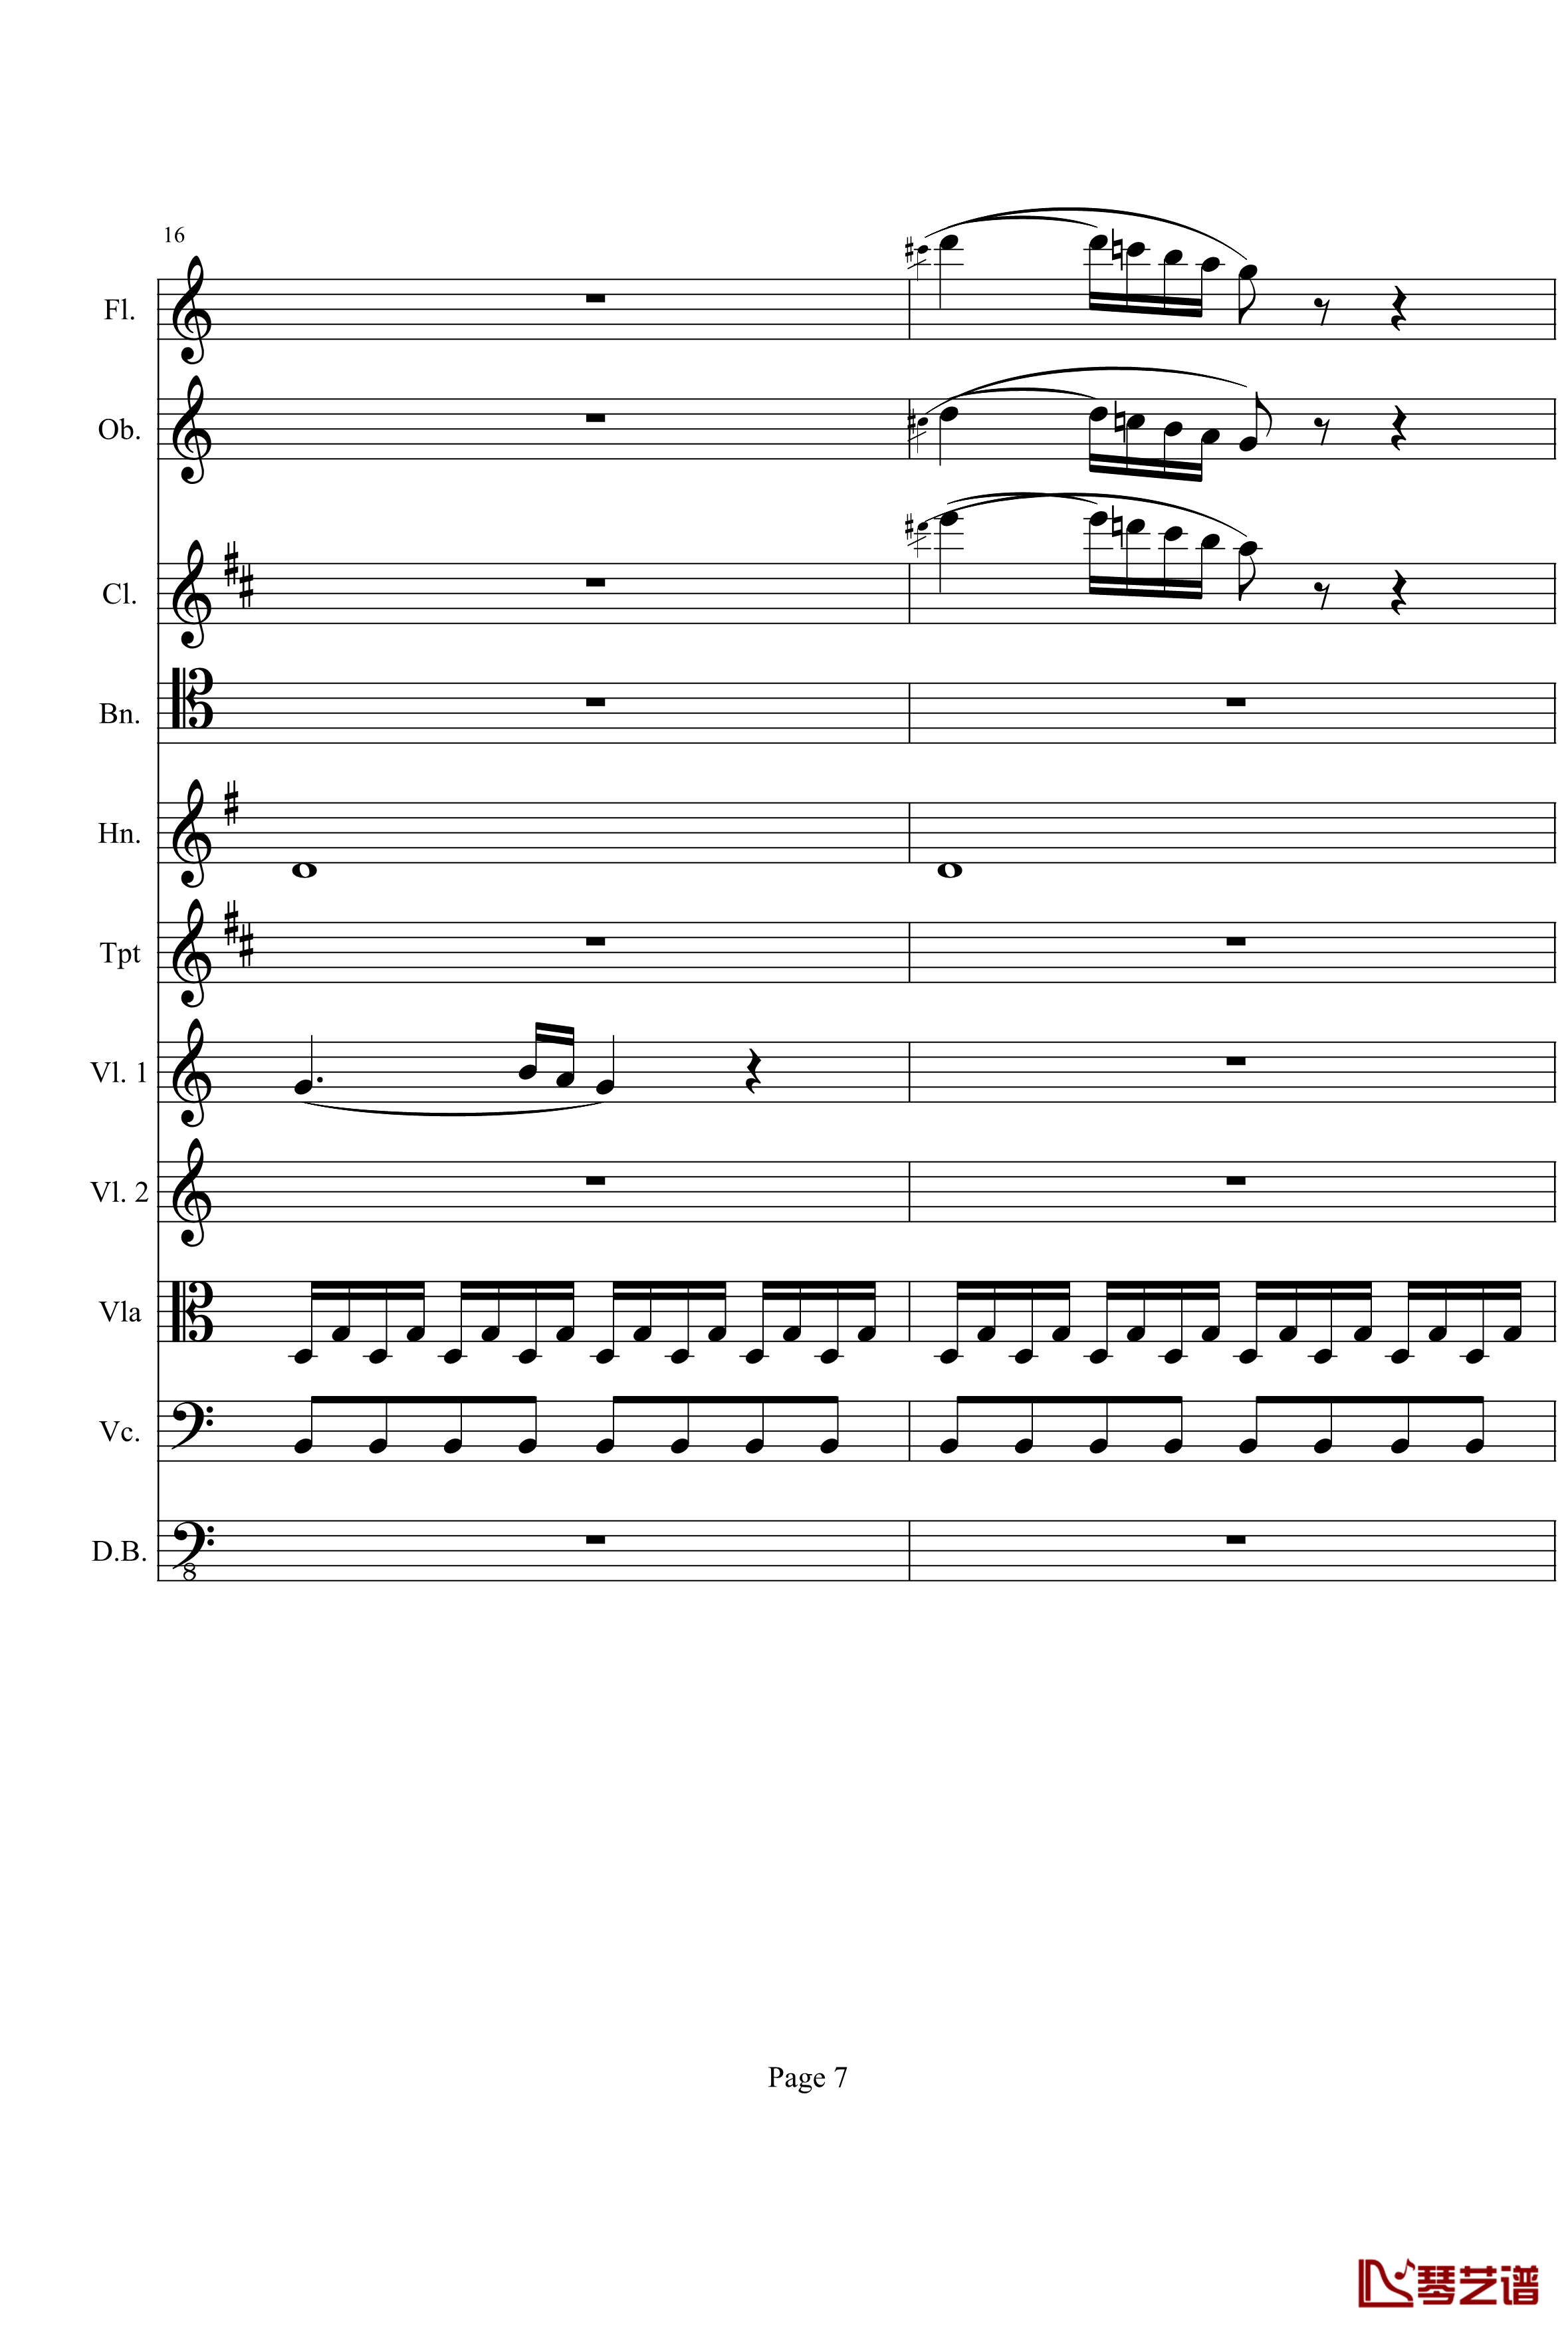 奏鸣曲之交响钢琴谱-第21-Ⅰ-贝多芬-beethoven7